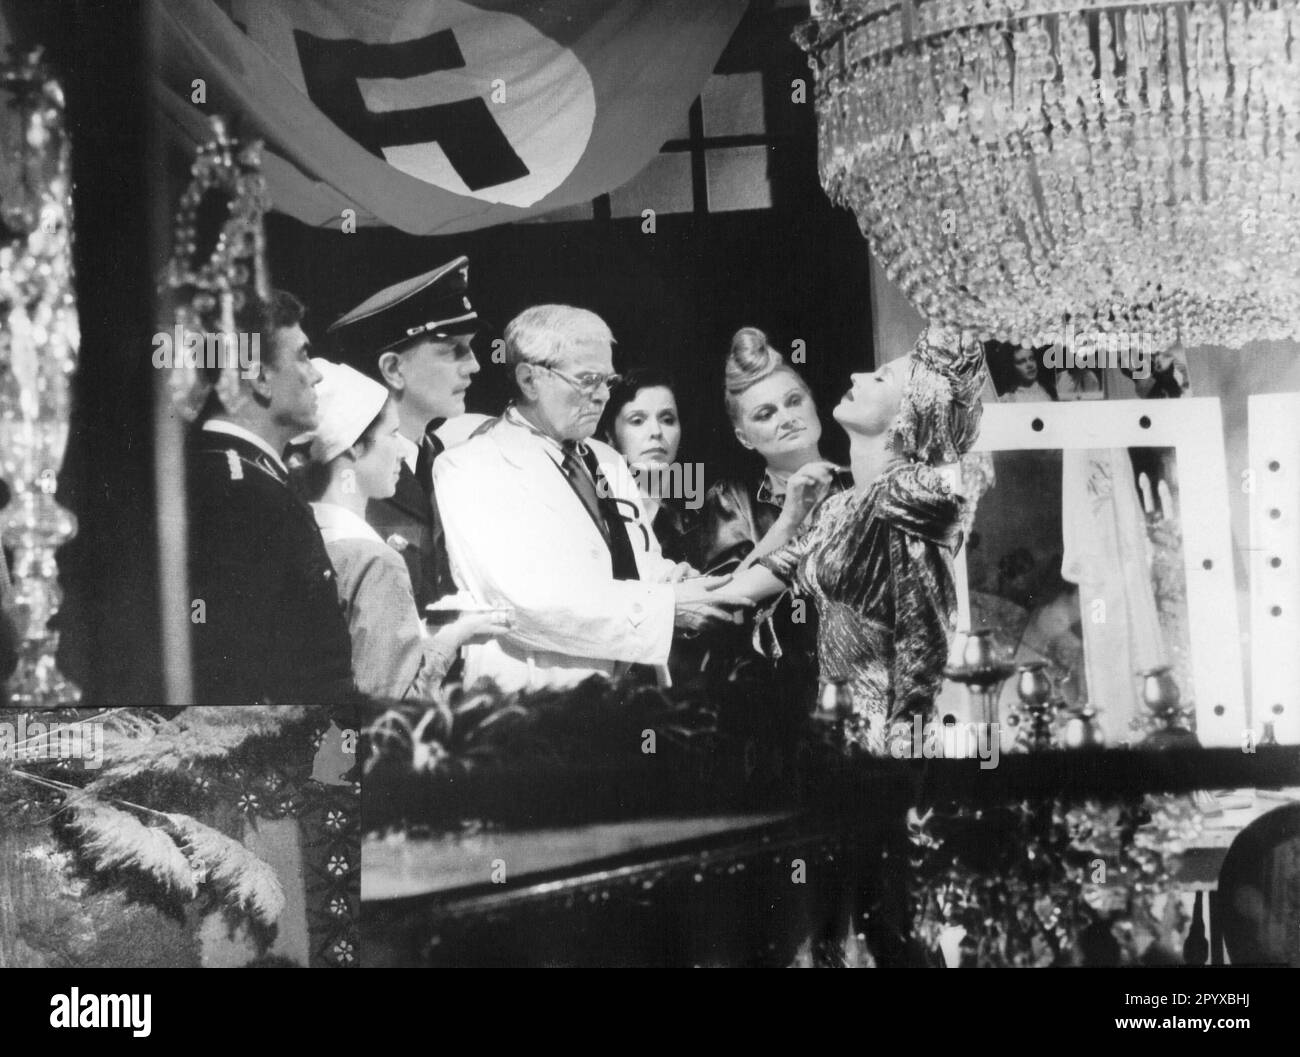 Hanna Schygulla mit Erik Schumann, Karl Heinz von Hassel und Herbert Steinmetz in "Lili Marleen", Regie Rainer Werner Fassbinder, Deutschland 1981. [Maschinelle Übersetzung] Stockfoto